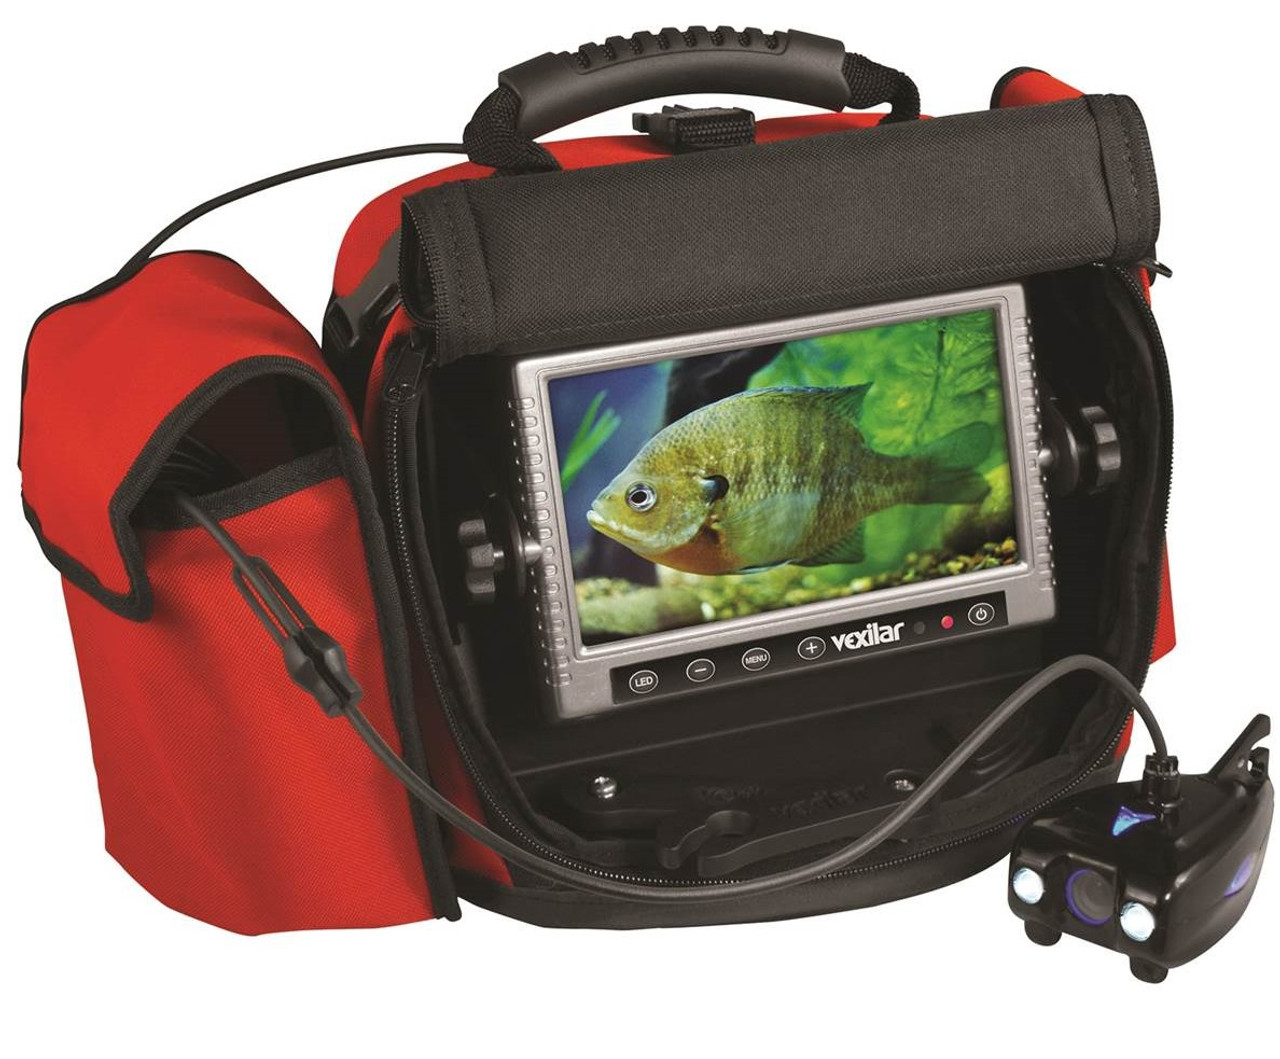 Монитор для камеры для рыбалки. Видеокамера для зимней рыбалки. Камера для подледной рыбалки. Камера для подводной рыбалки. Бюджетная подводная камера.